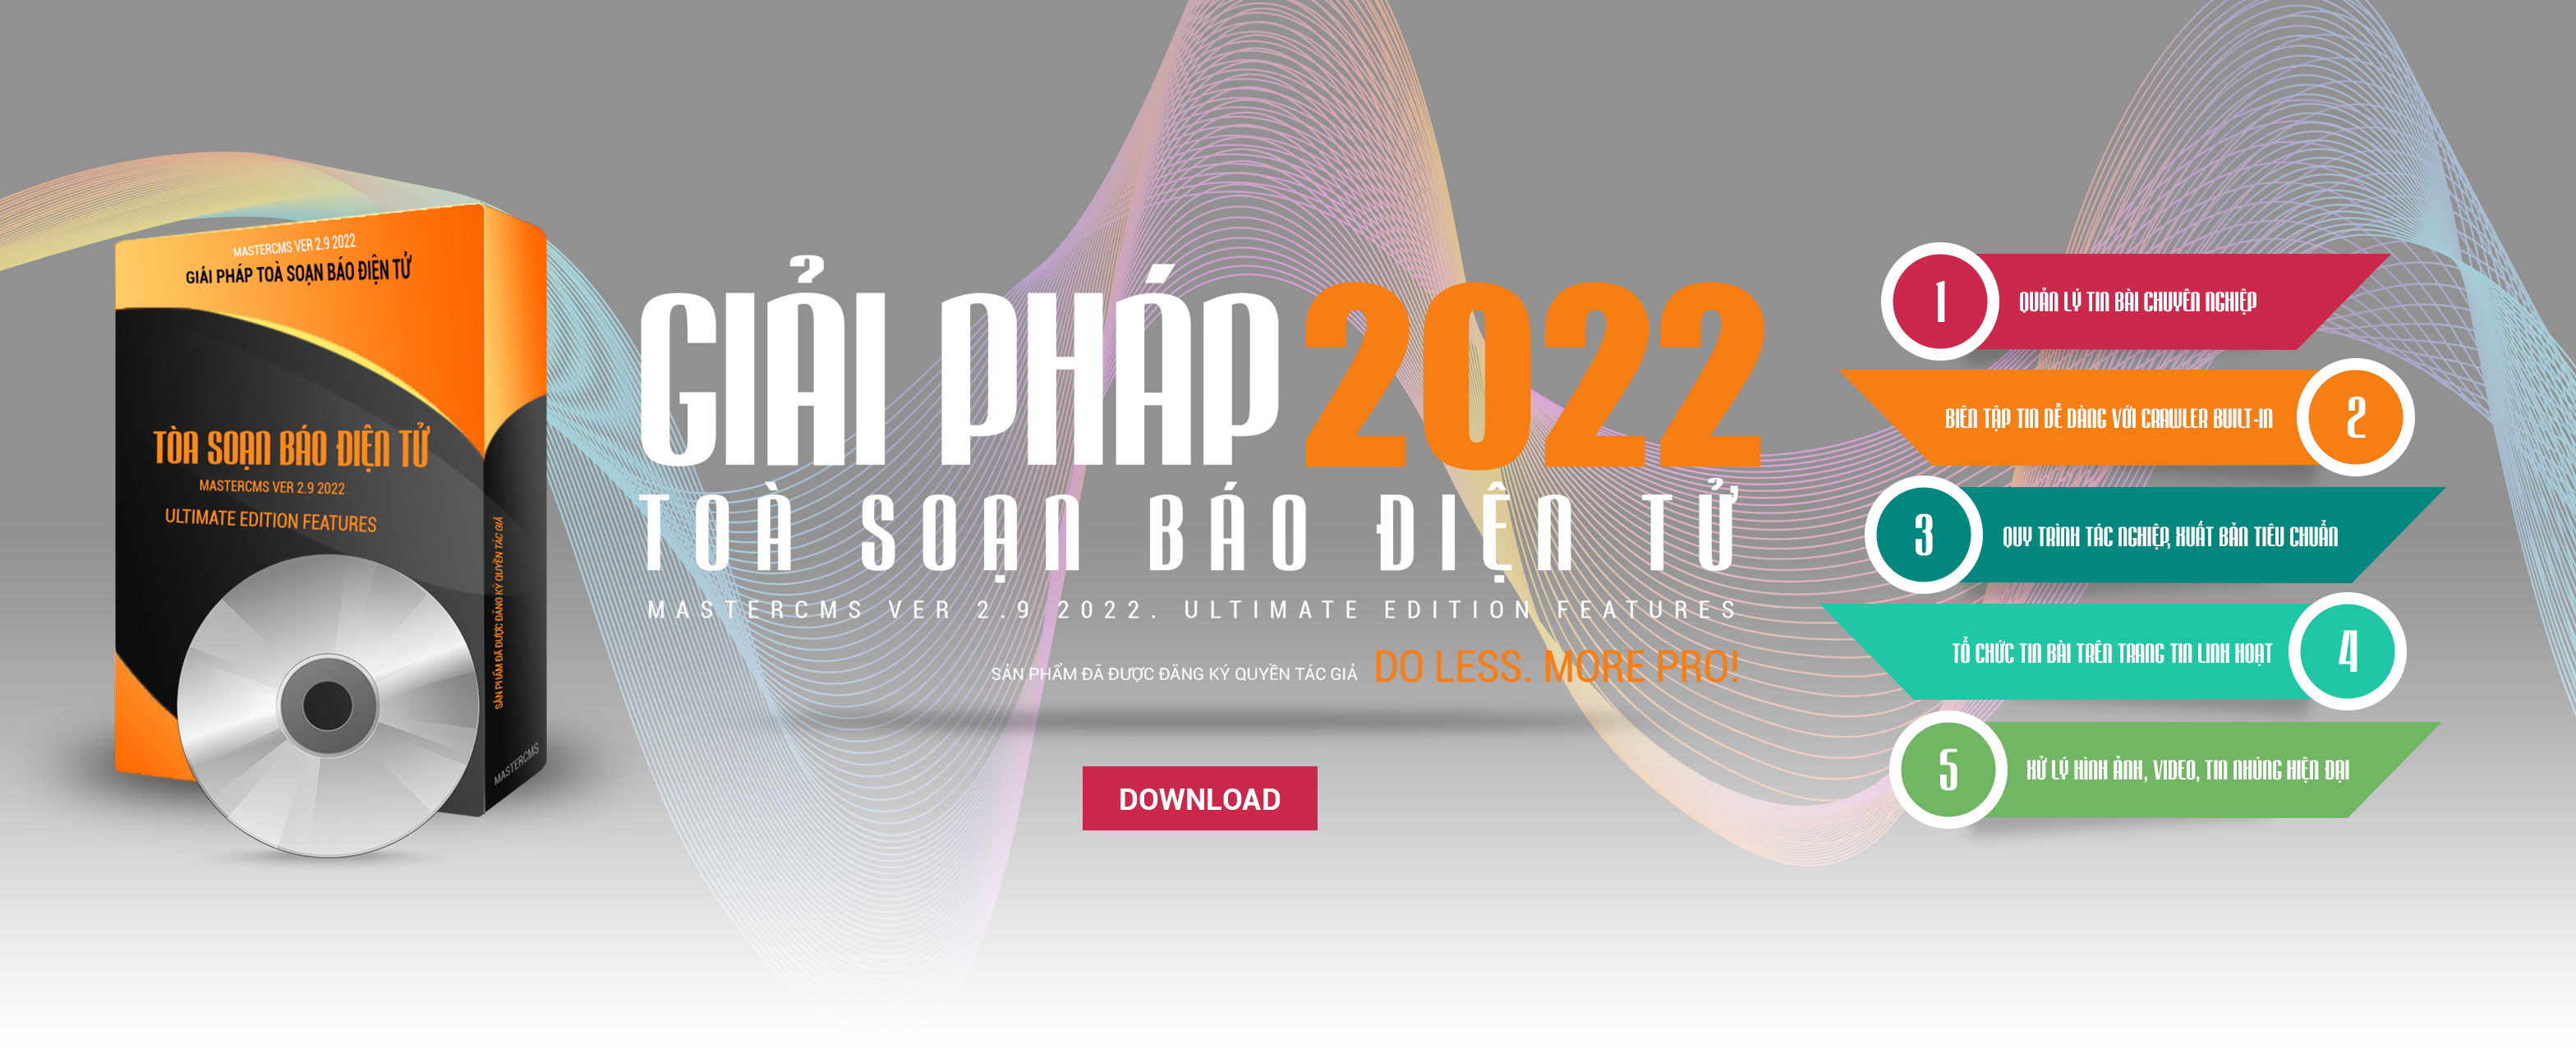 giai-phap-2022-toa-soan-bao-dien-tu